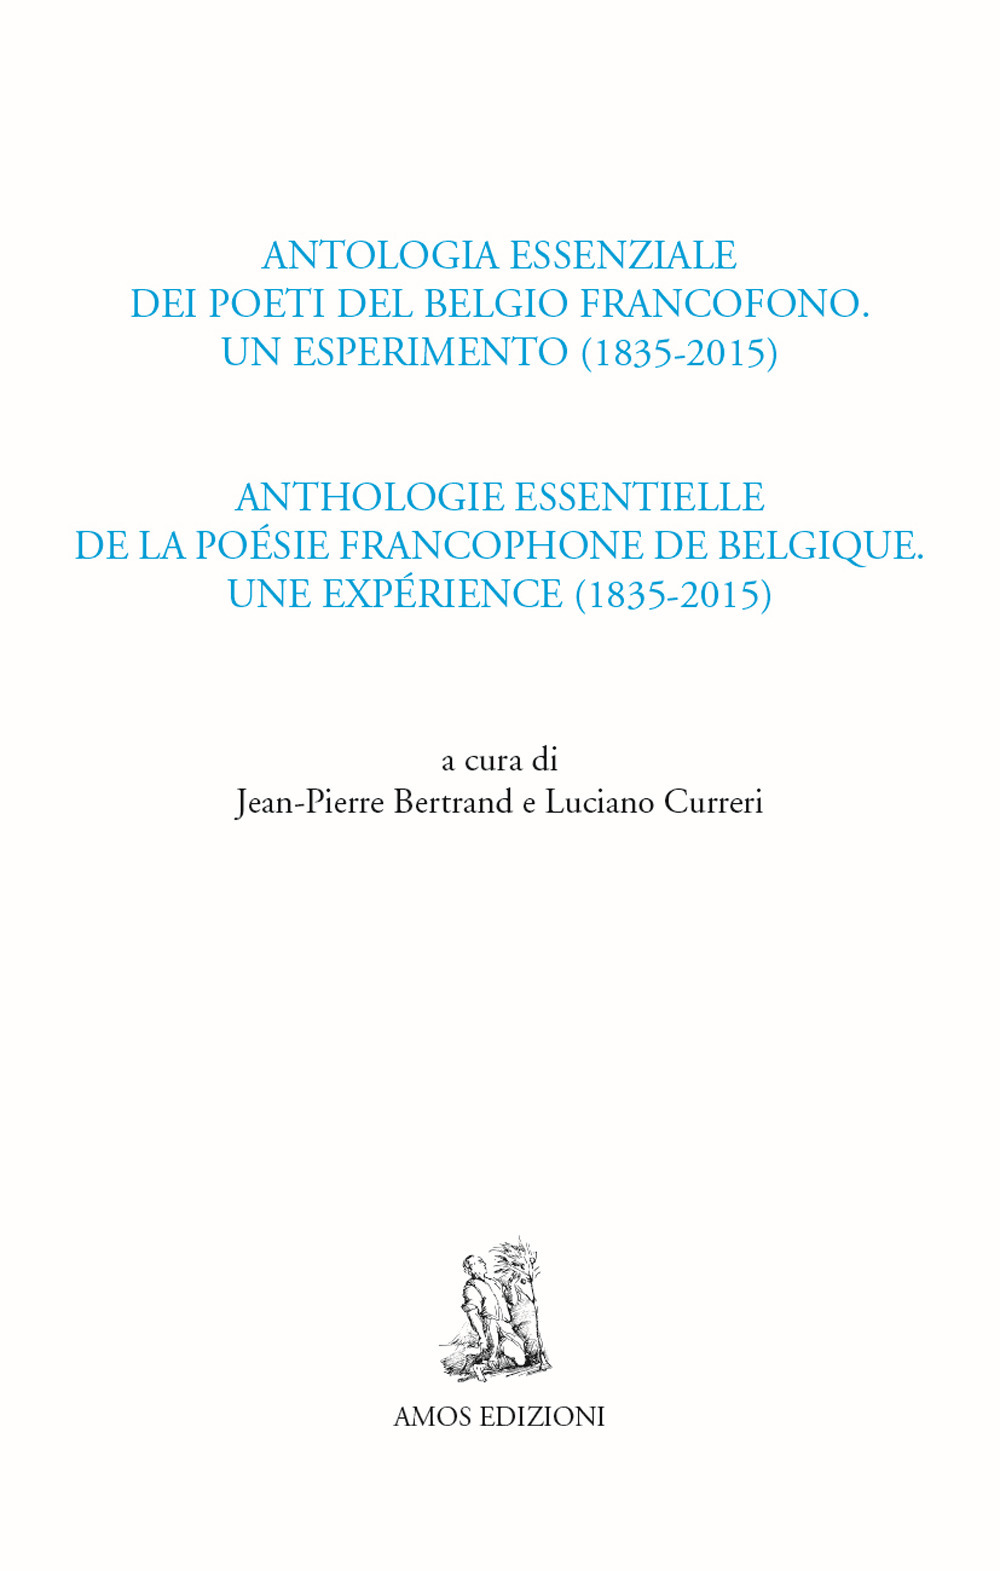 Antologia essenziale dei poeti del Belgio francofono. Un esperimento (1835-2015)-Anthologie essentielle de la poésie francophone de Belgique. Une expérience